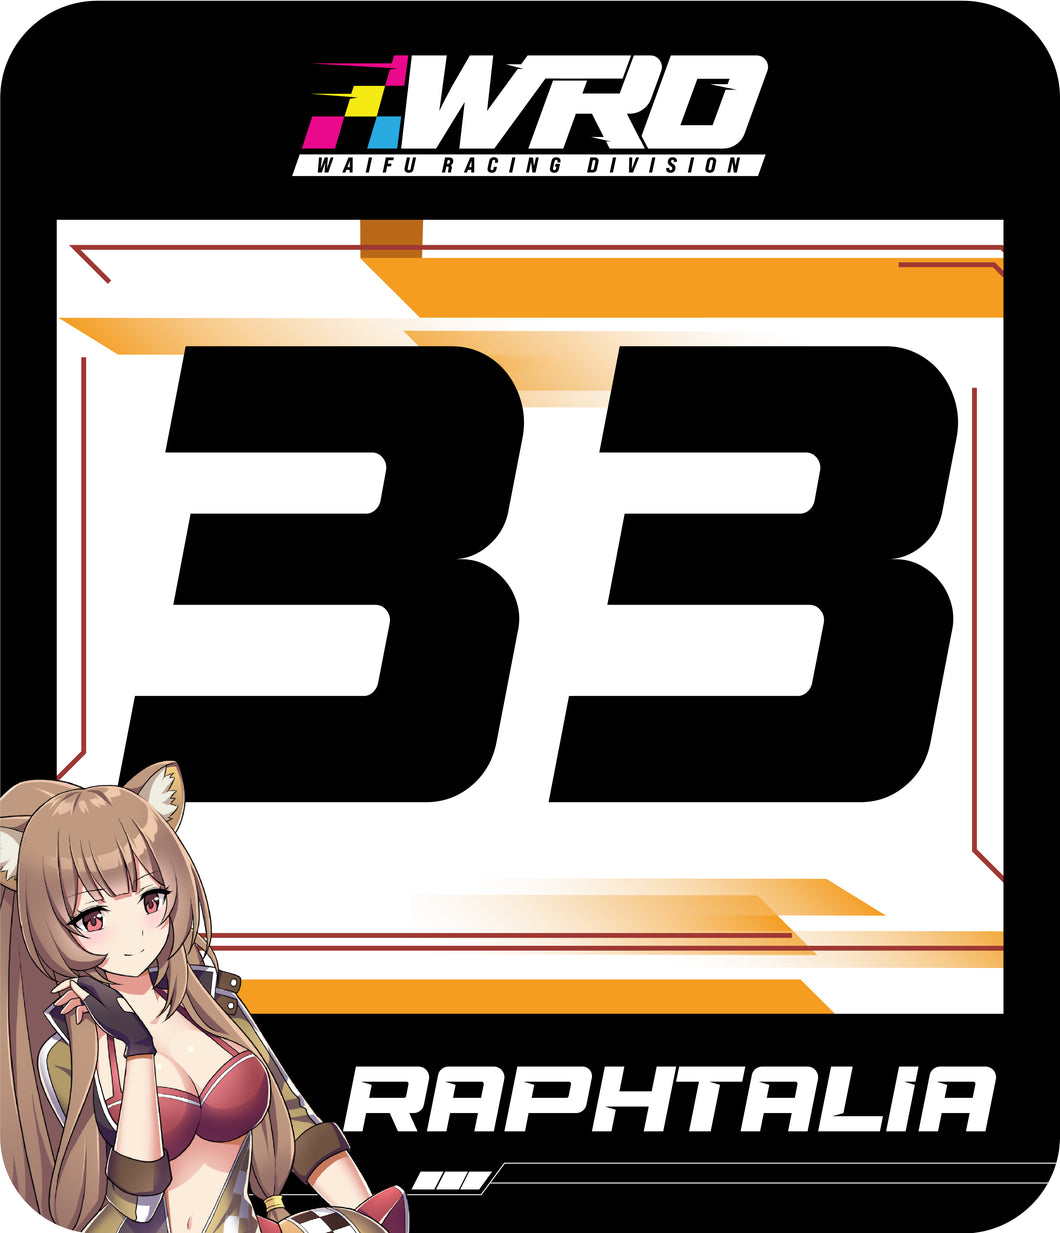 Raphtalia Track Number